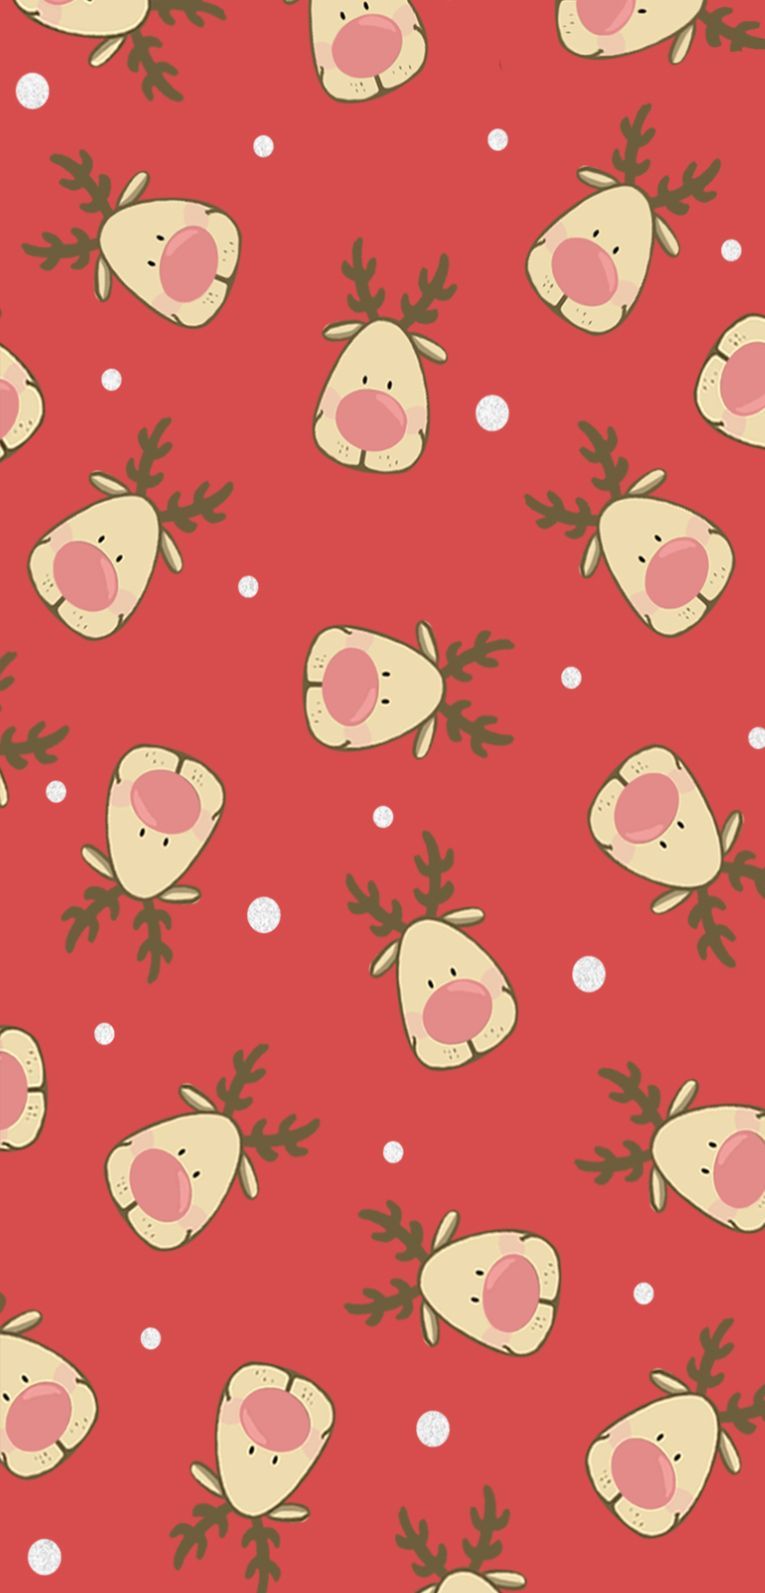 A joyful Christmas with Gocase wallpaper. Christmas phone wallpaper, Wallpaper iphone christmas, Xmas wallpaper